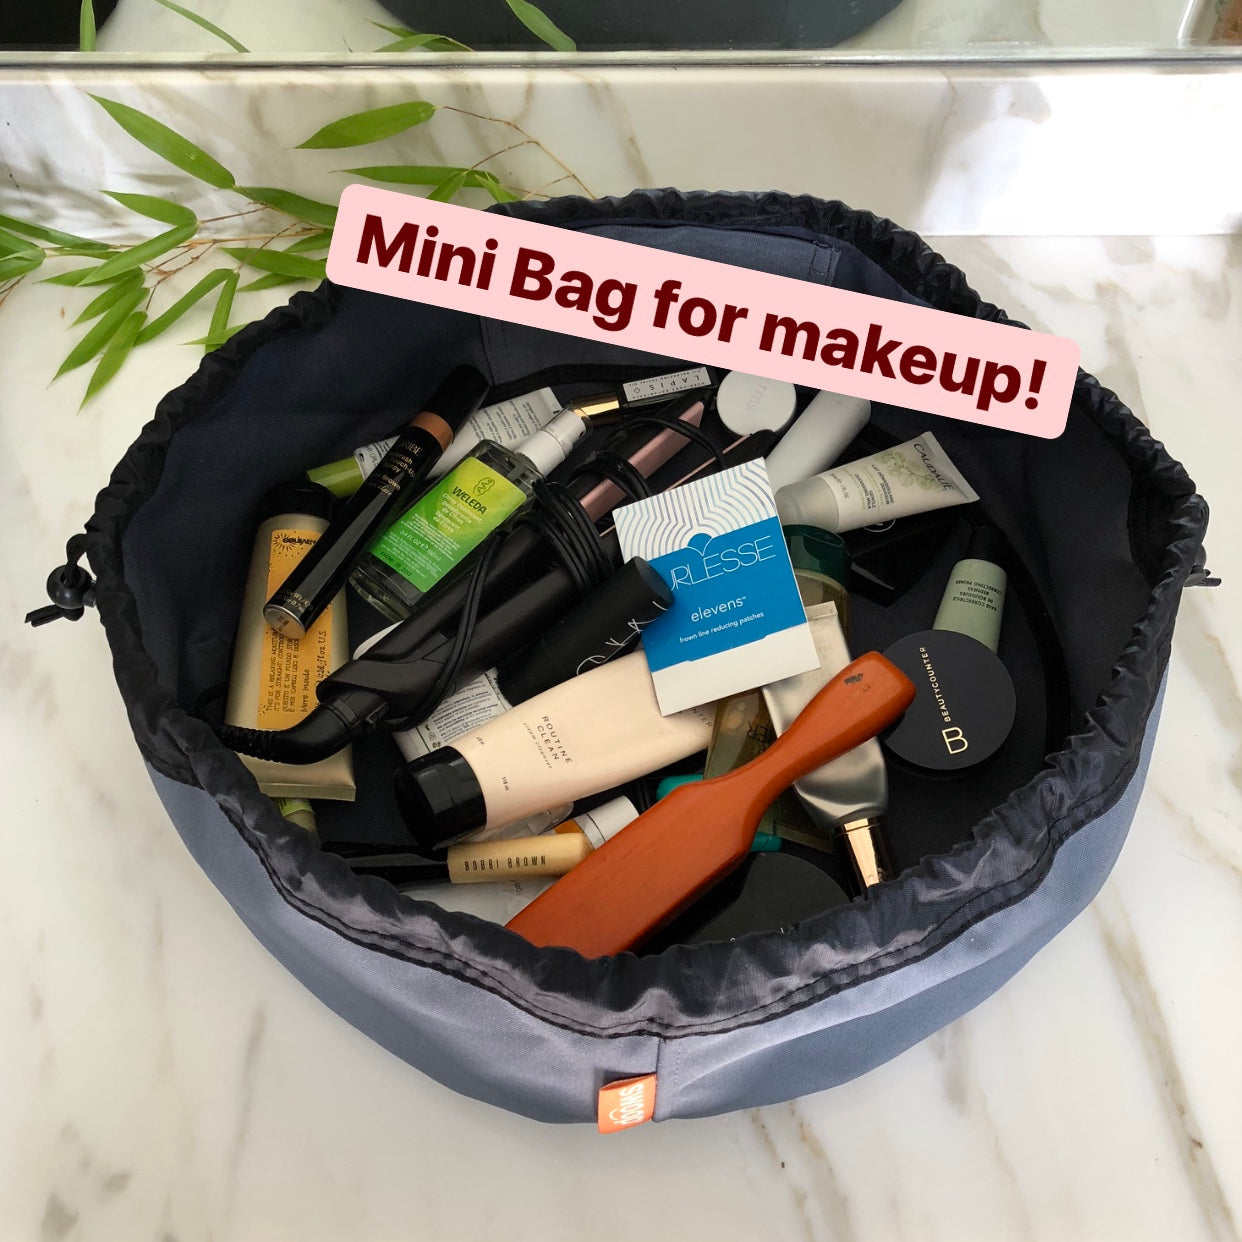 VIDEO: Swoop Mini for Makeup!